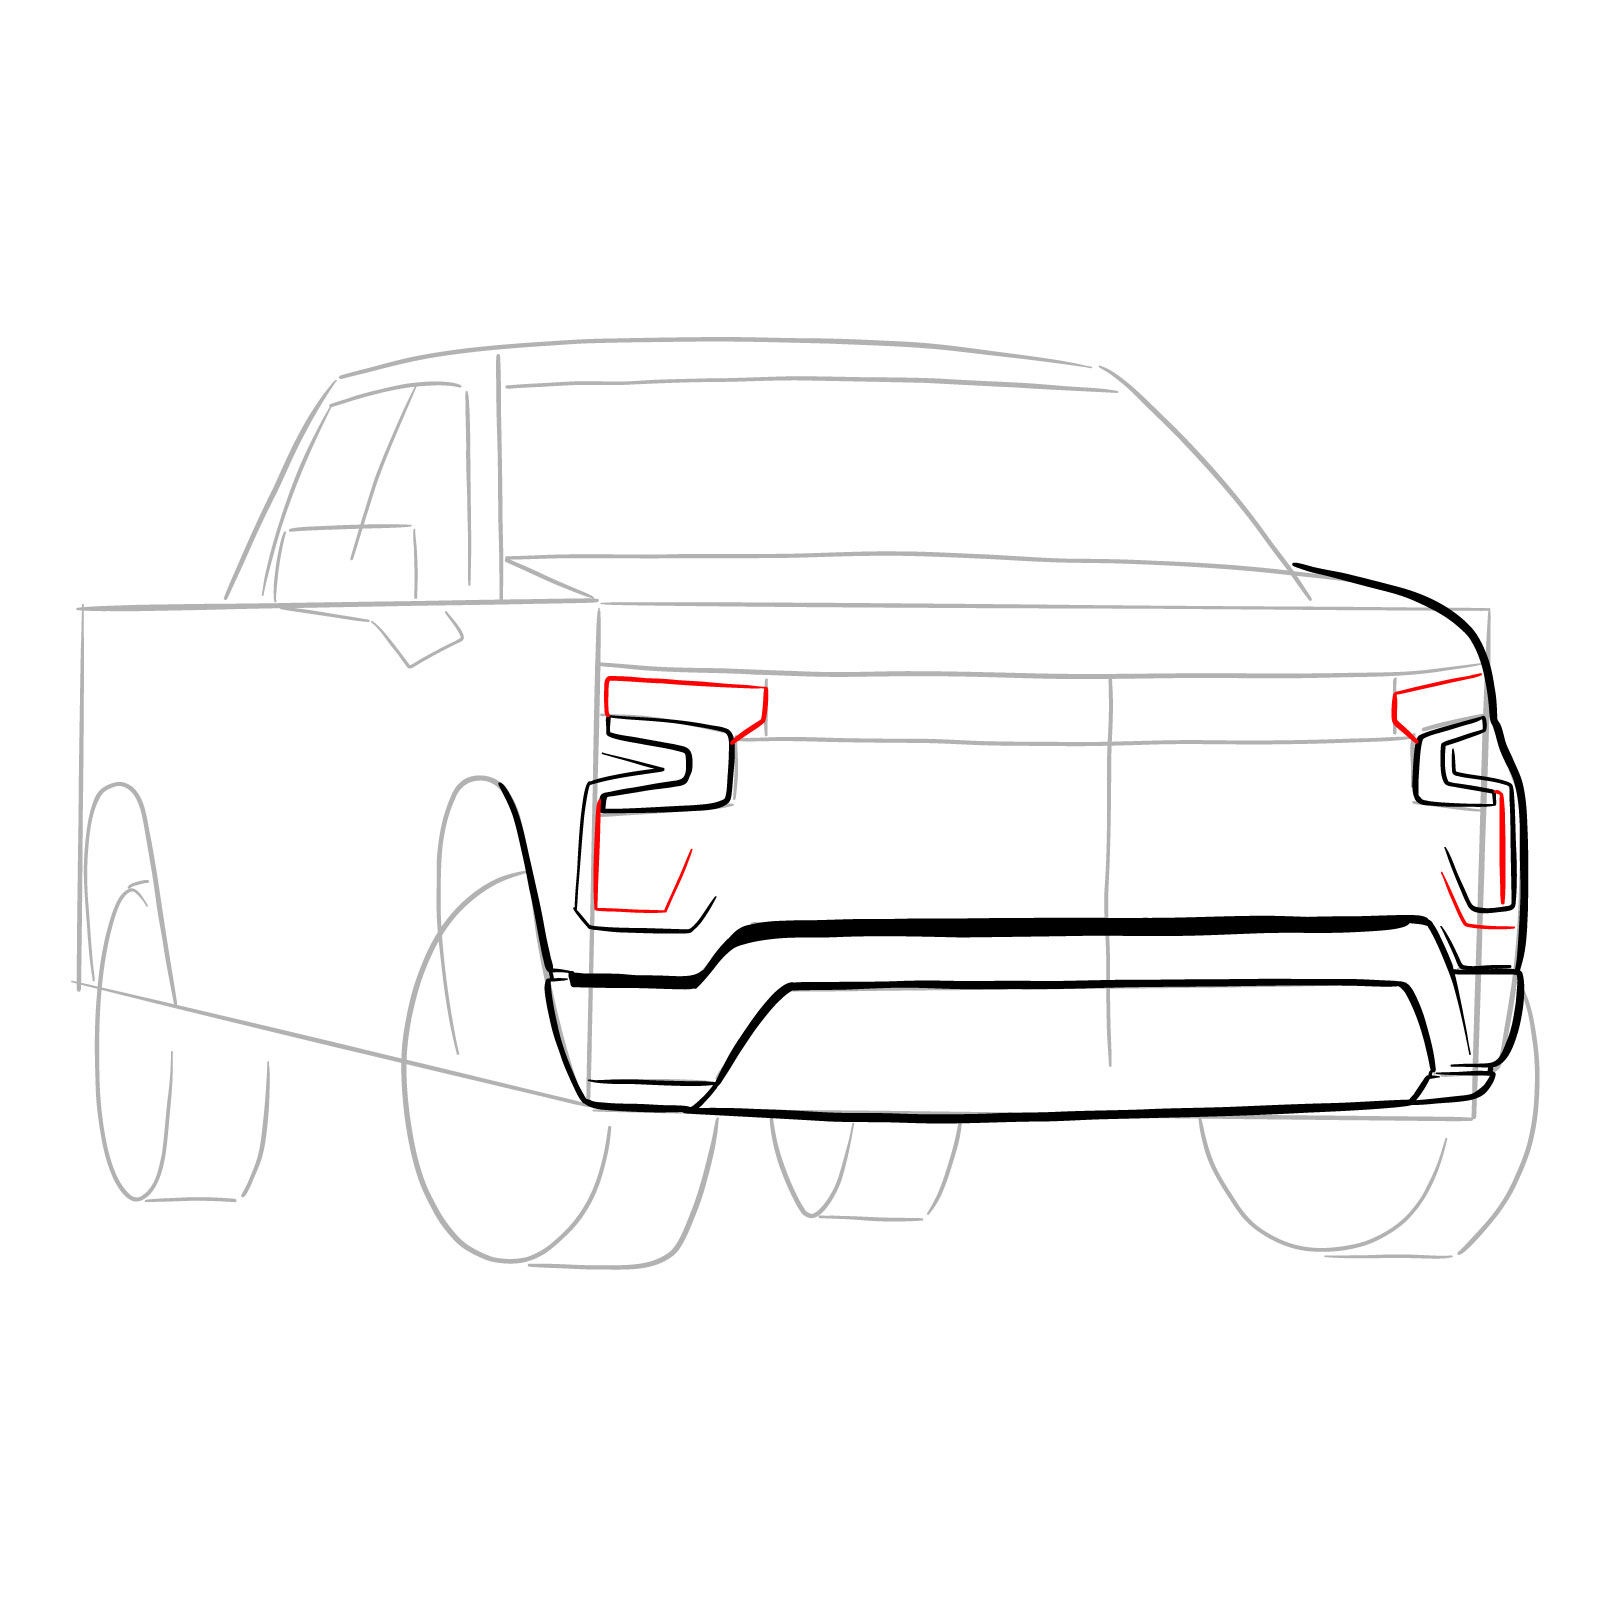 How to draw a 2022 Chevy Silverado - step 10